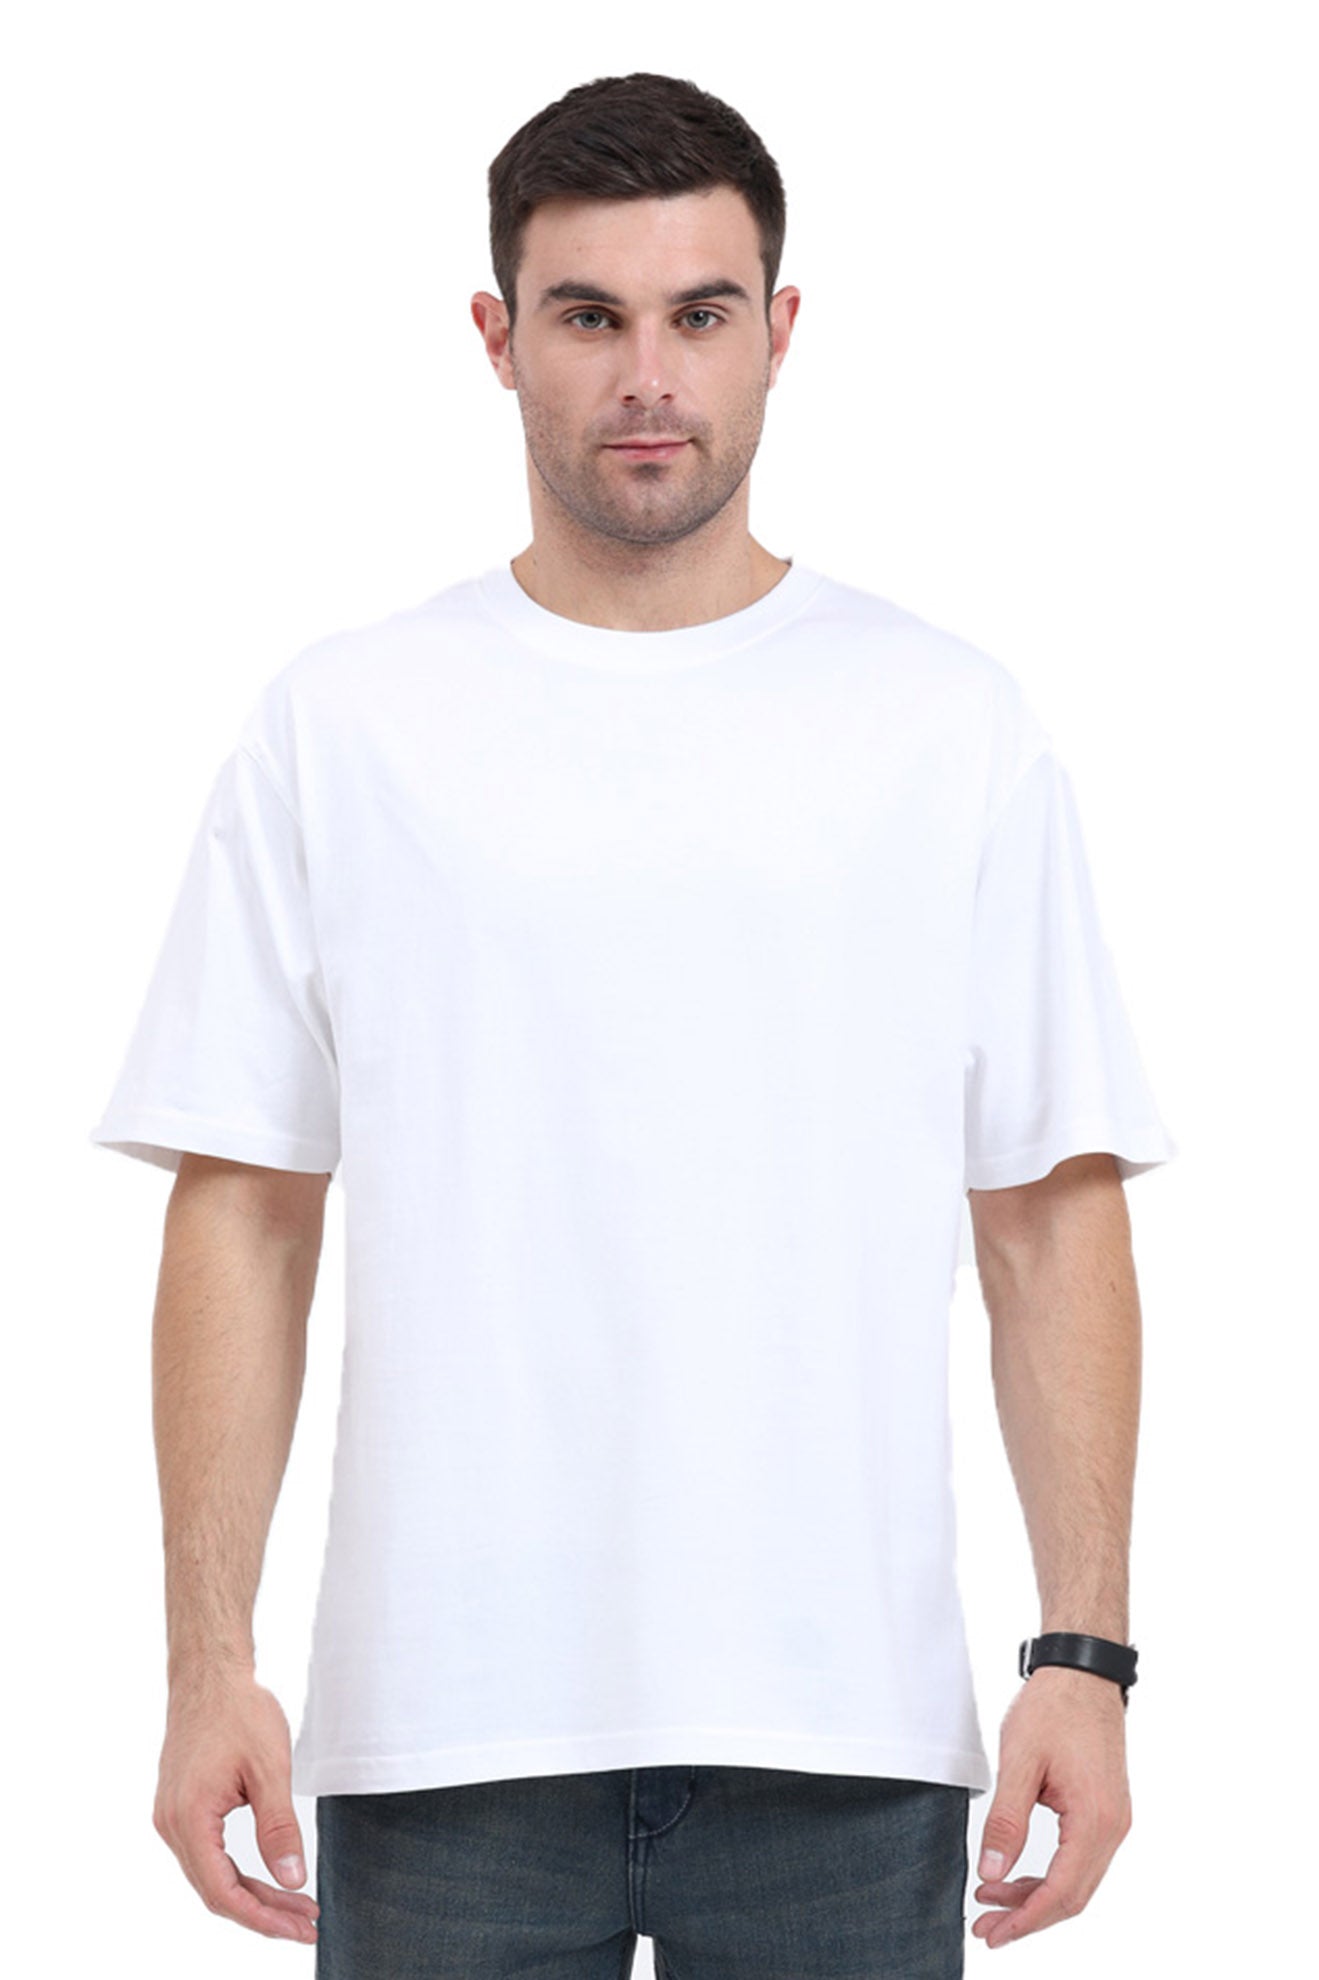 Oversized plain white t shirt for men – Uppstring